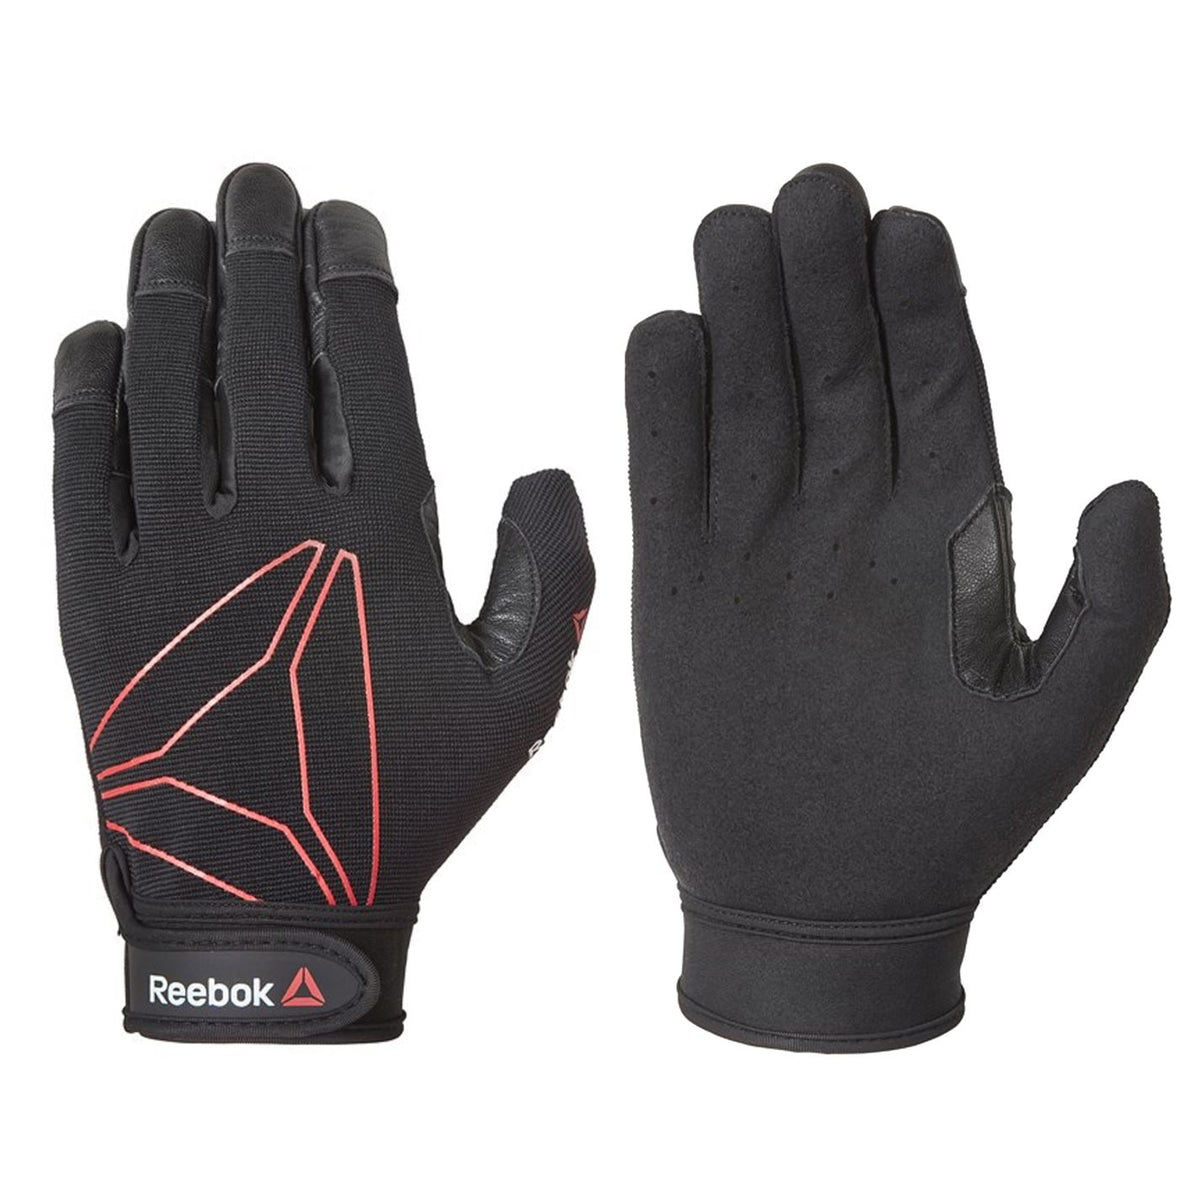 REEBOK - Full Finger Functional Glove